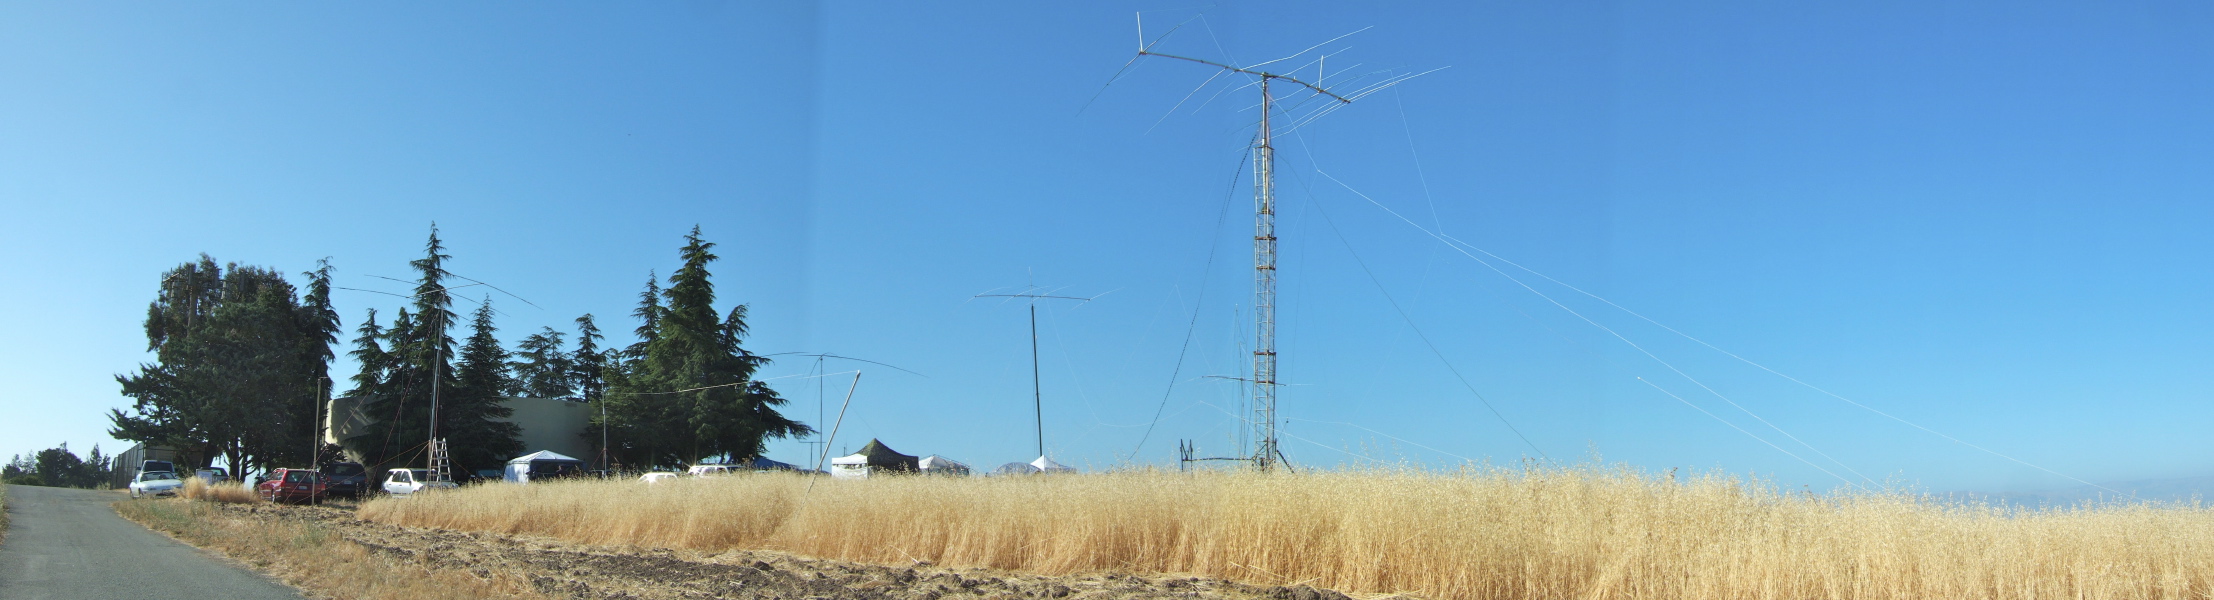 WVARA antenna farm on Mora Hill